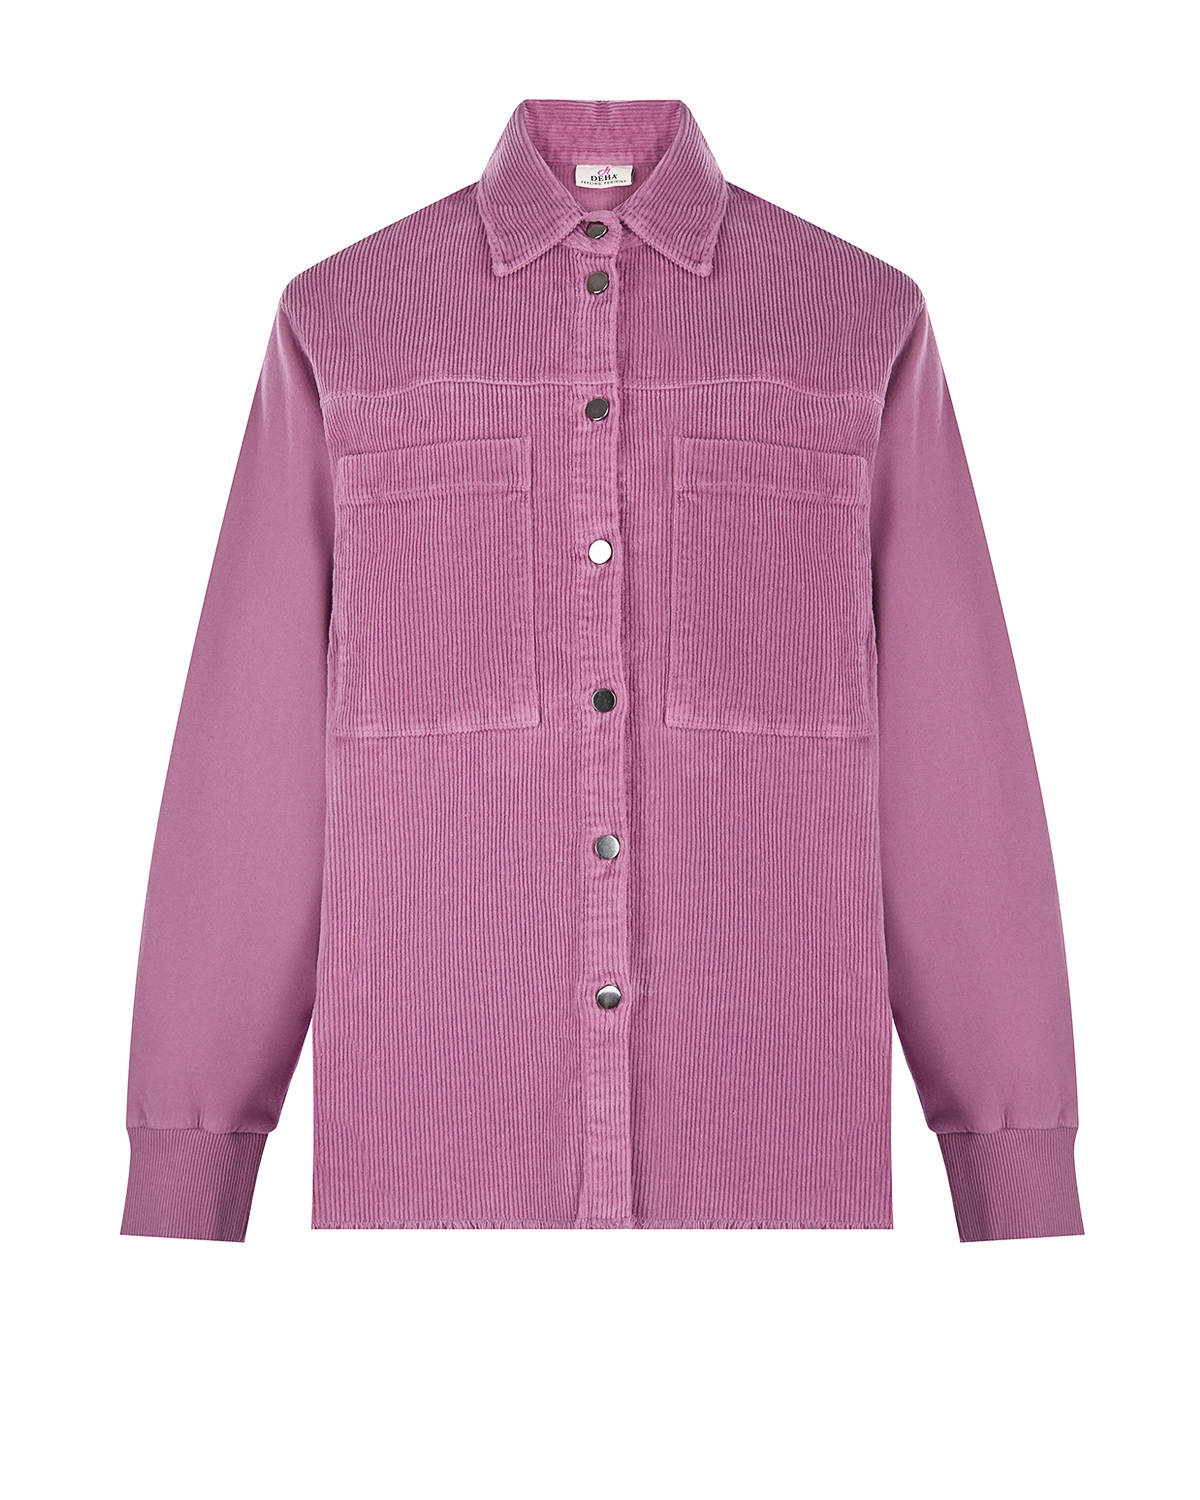 Сиреневая вельветовая рубашка Deha, размер 44, цвет сиреневый - фото 1